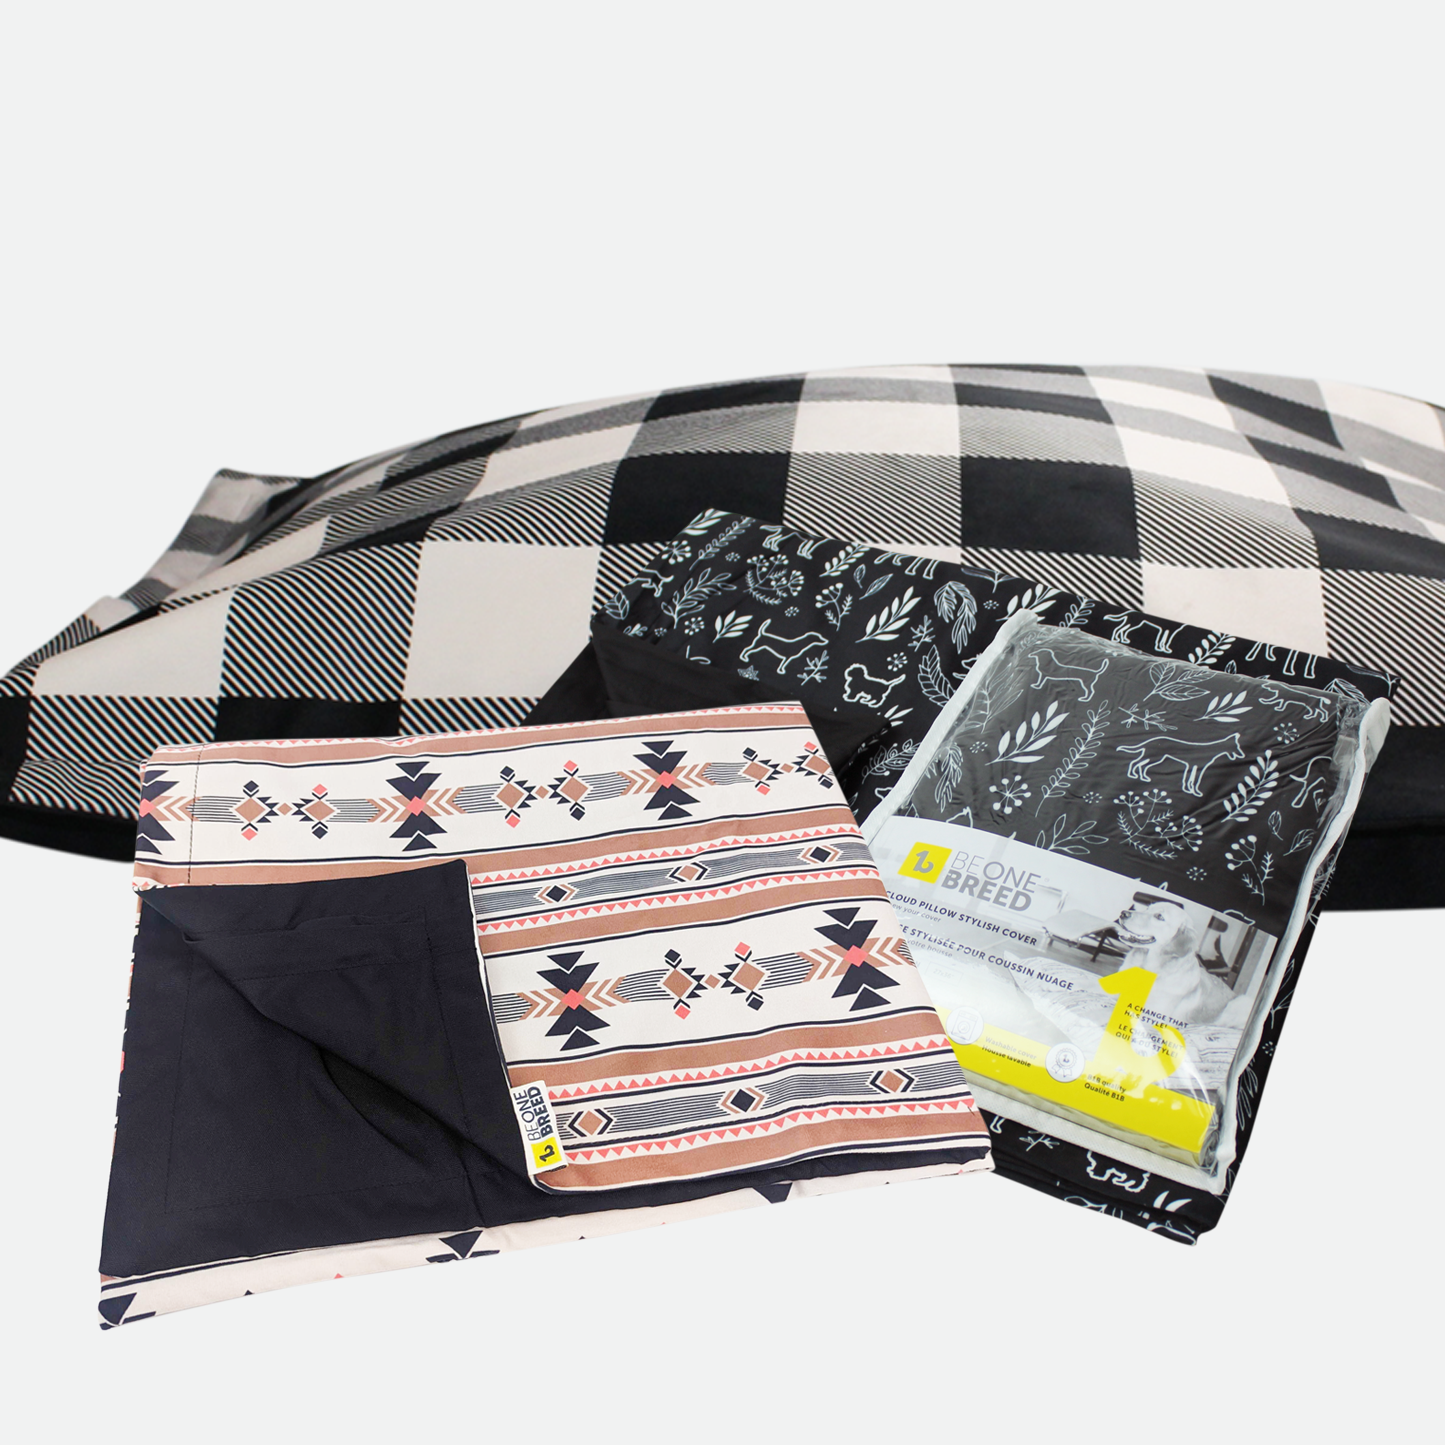 Deco Econo-kit for Cloud pillow